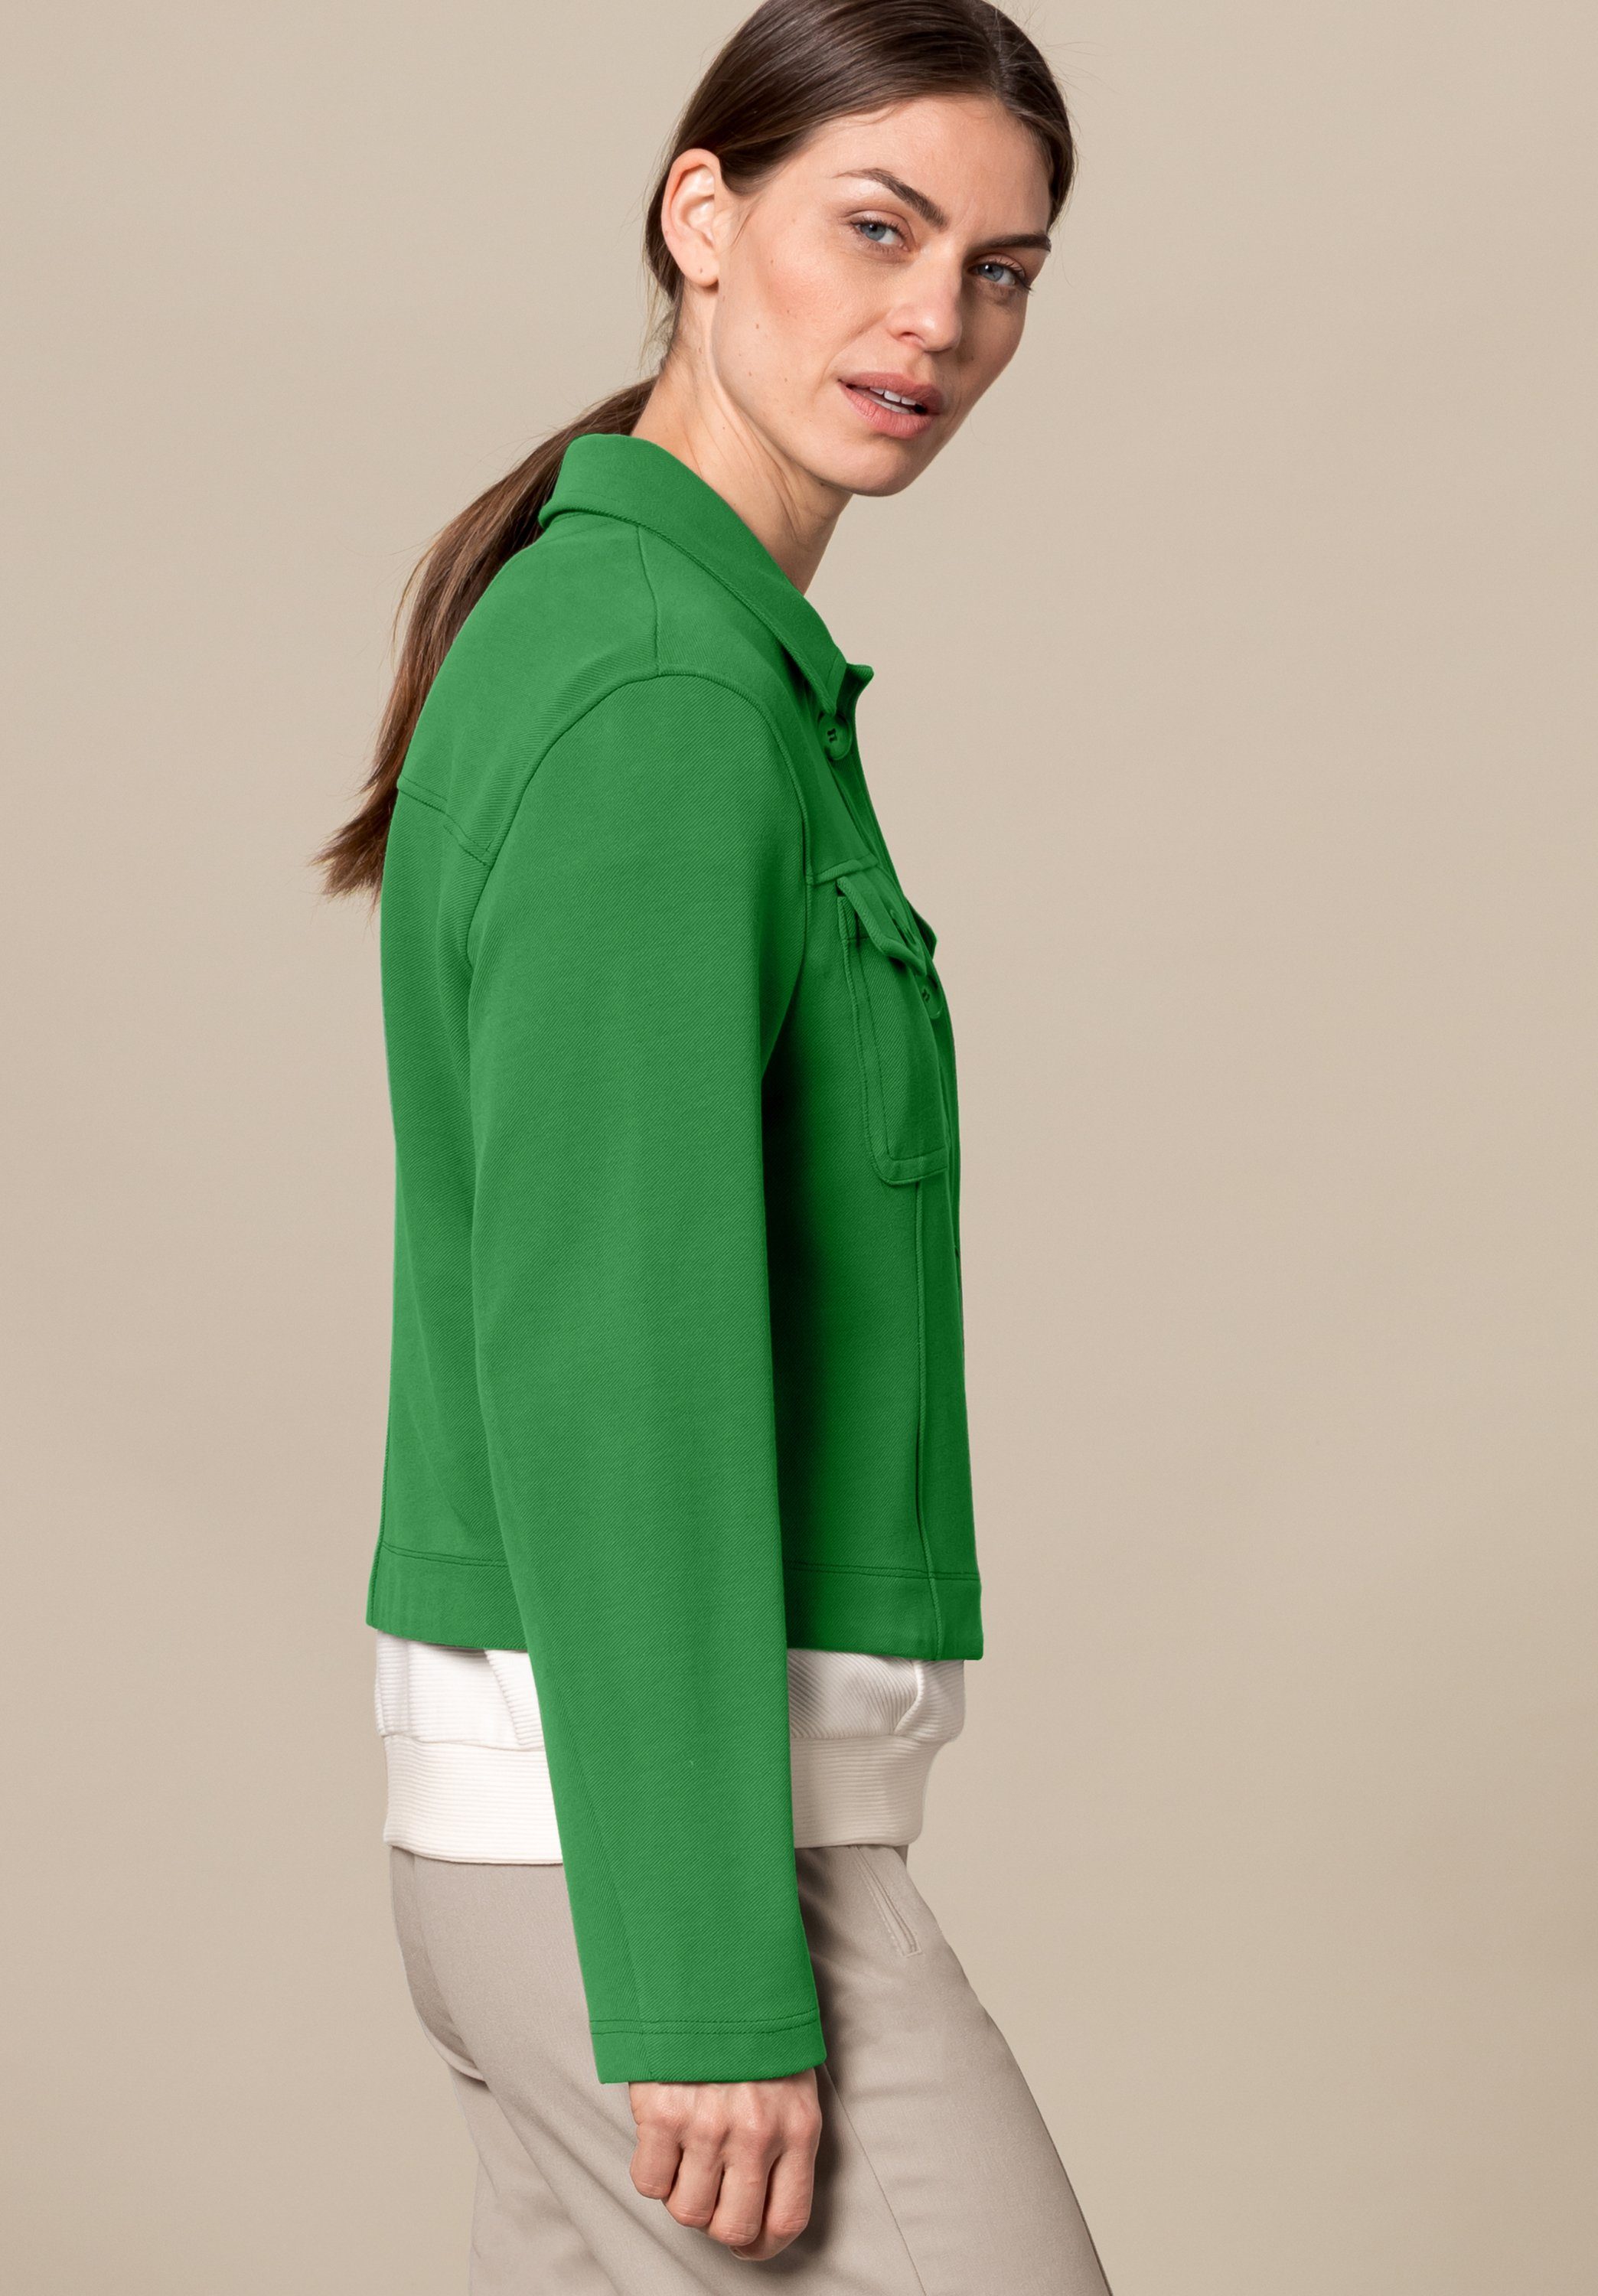 MIRANDA mit stylischen dark Trendfarbe Details in bianca greenery Kurzjacke angesagter